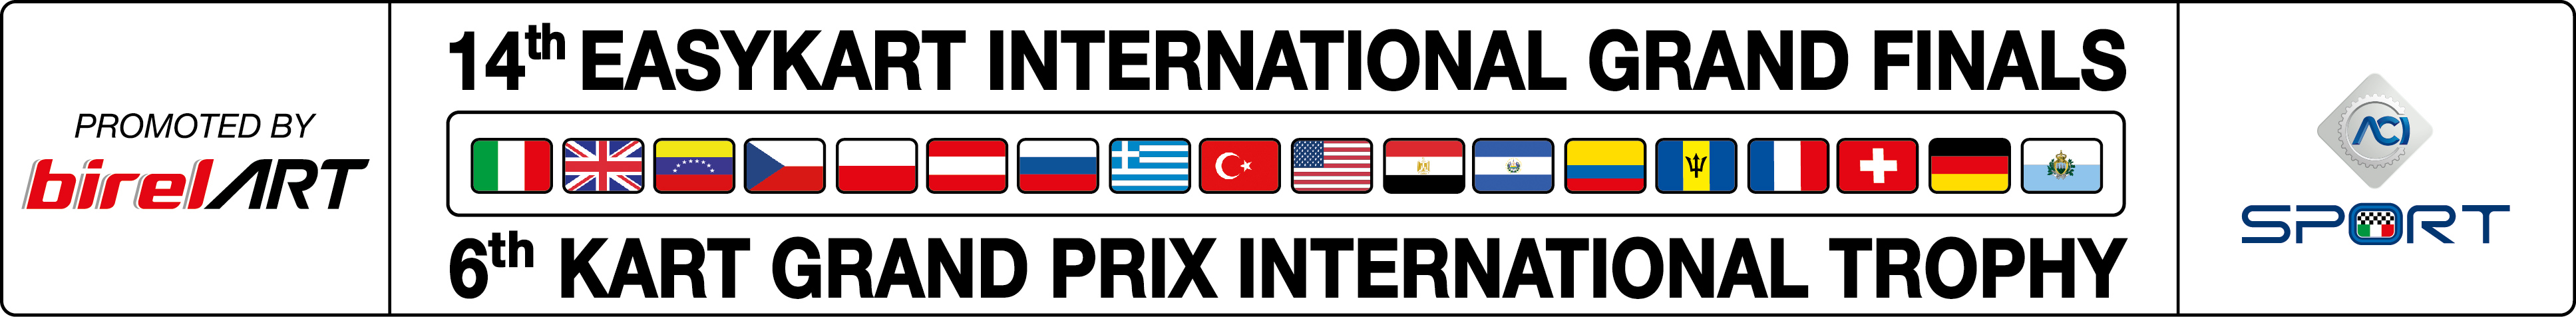 logo_finale_internazionale 2v_tr